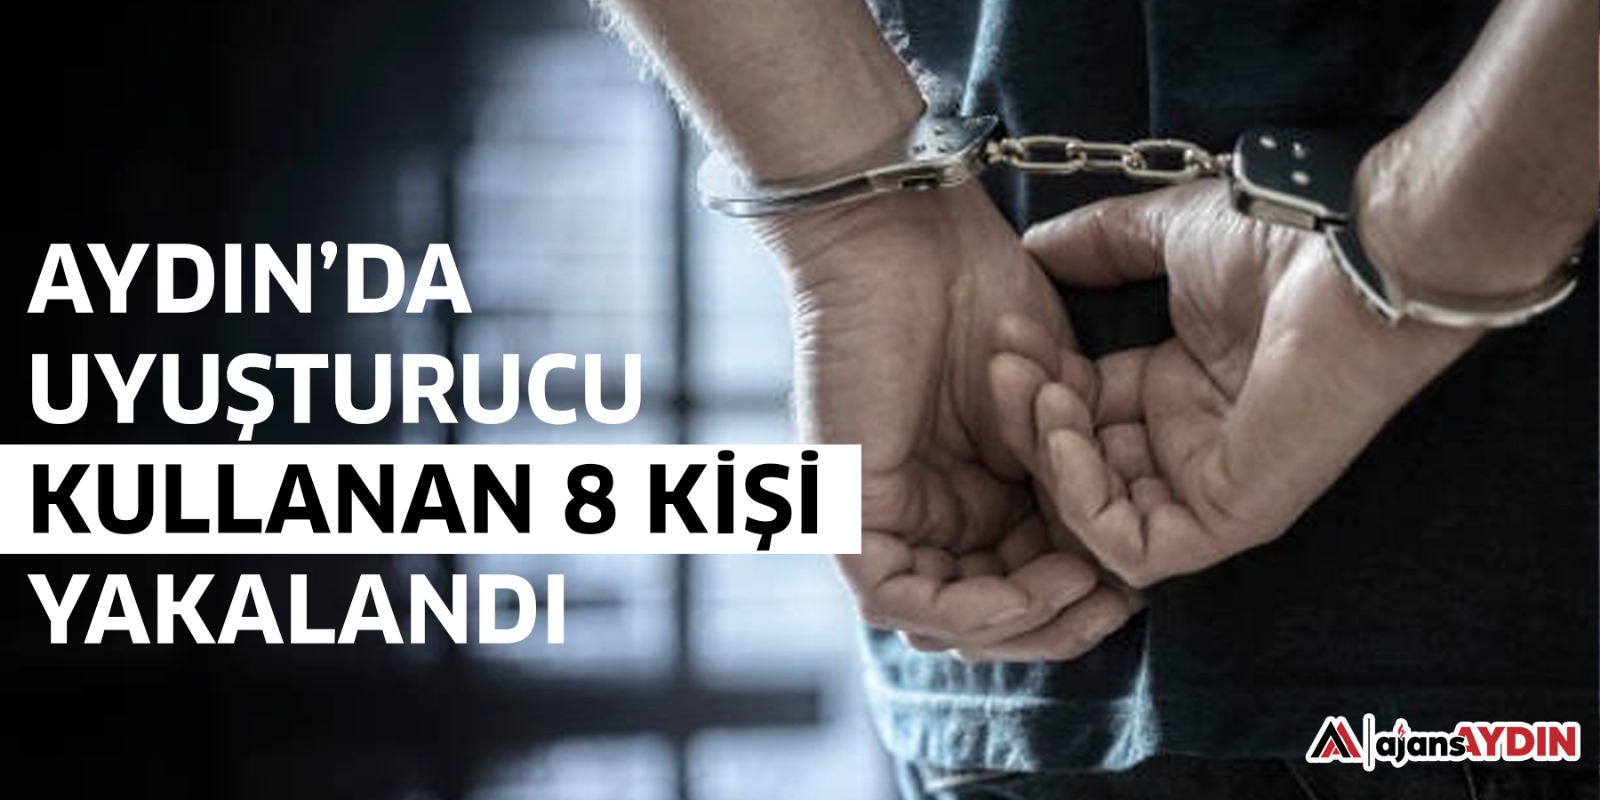 Aydın’da uyuşturucu kullanan 8 kişi yakalandı